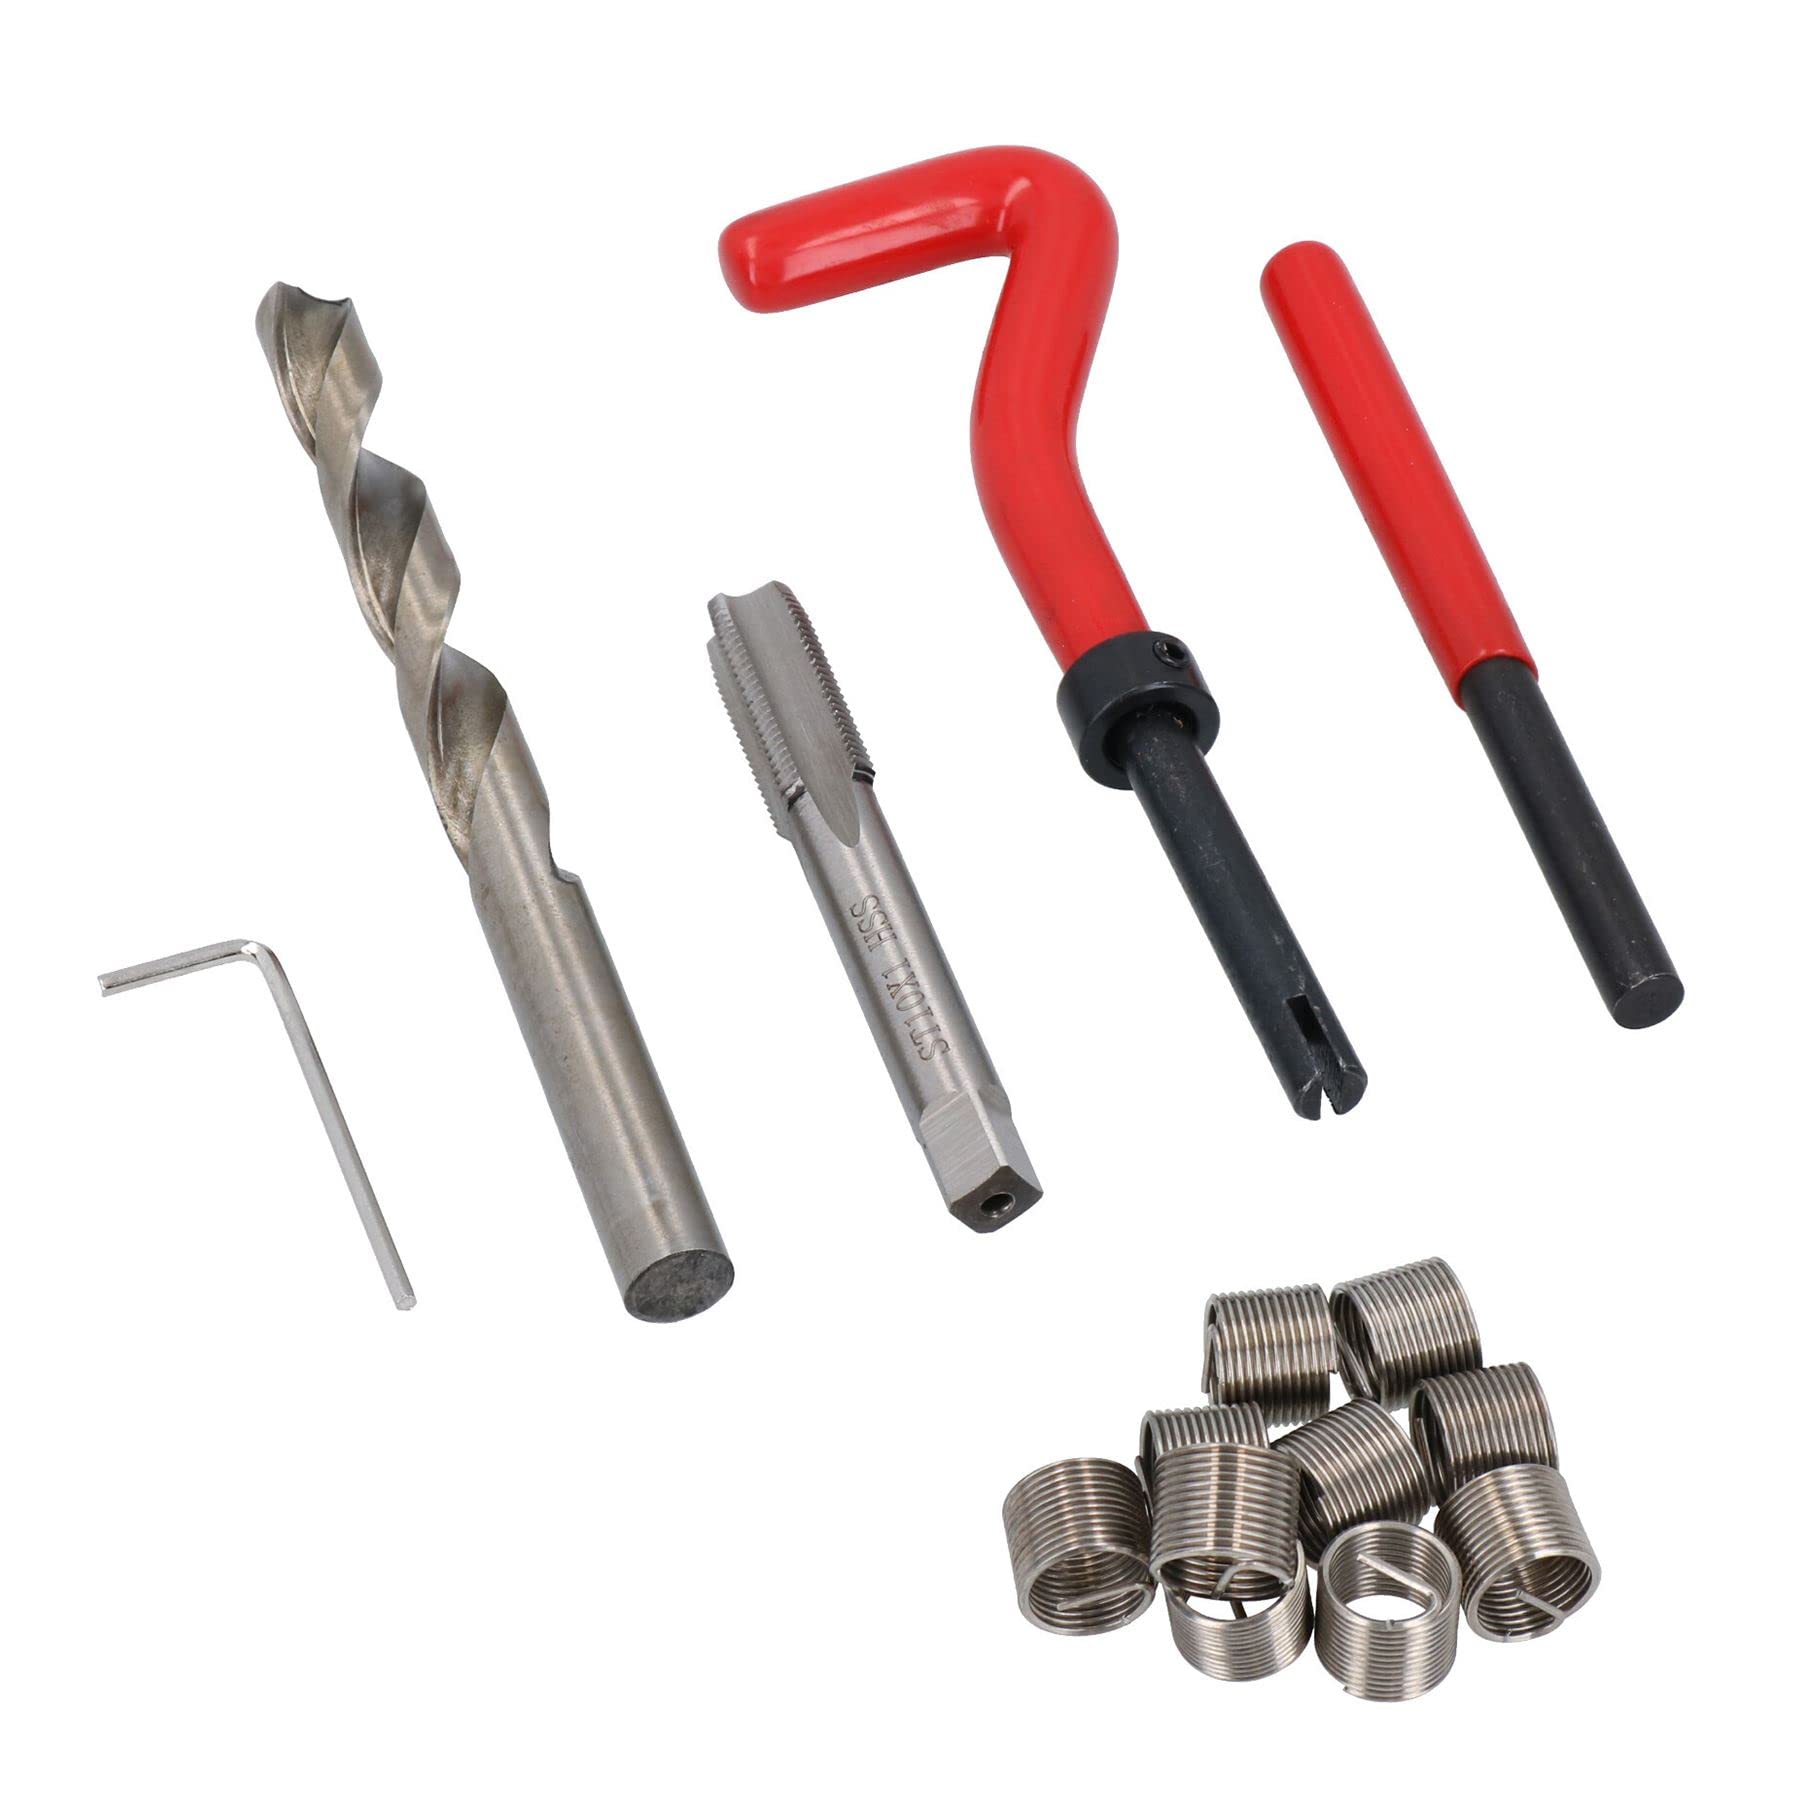 AB Tools M10 x 1,0 mm kit Reparatur Filetieren/helicoil 9PC beschädigt ein043 von AB Tools